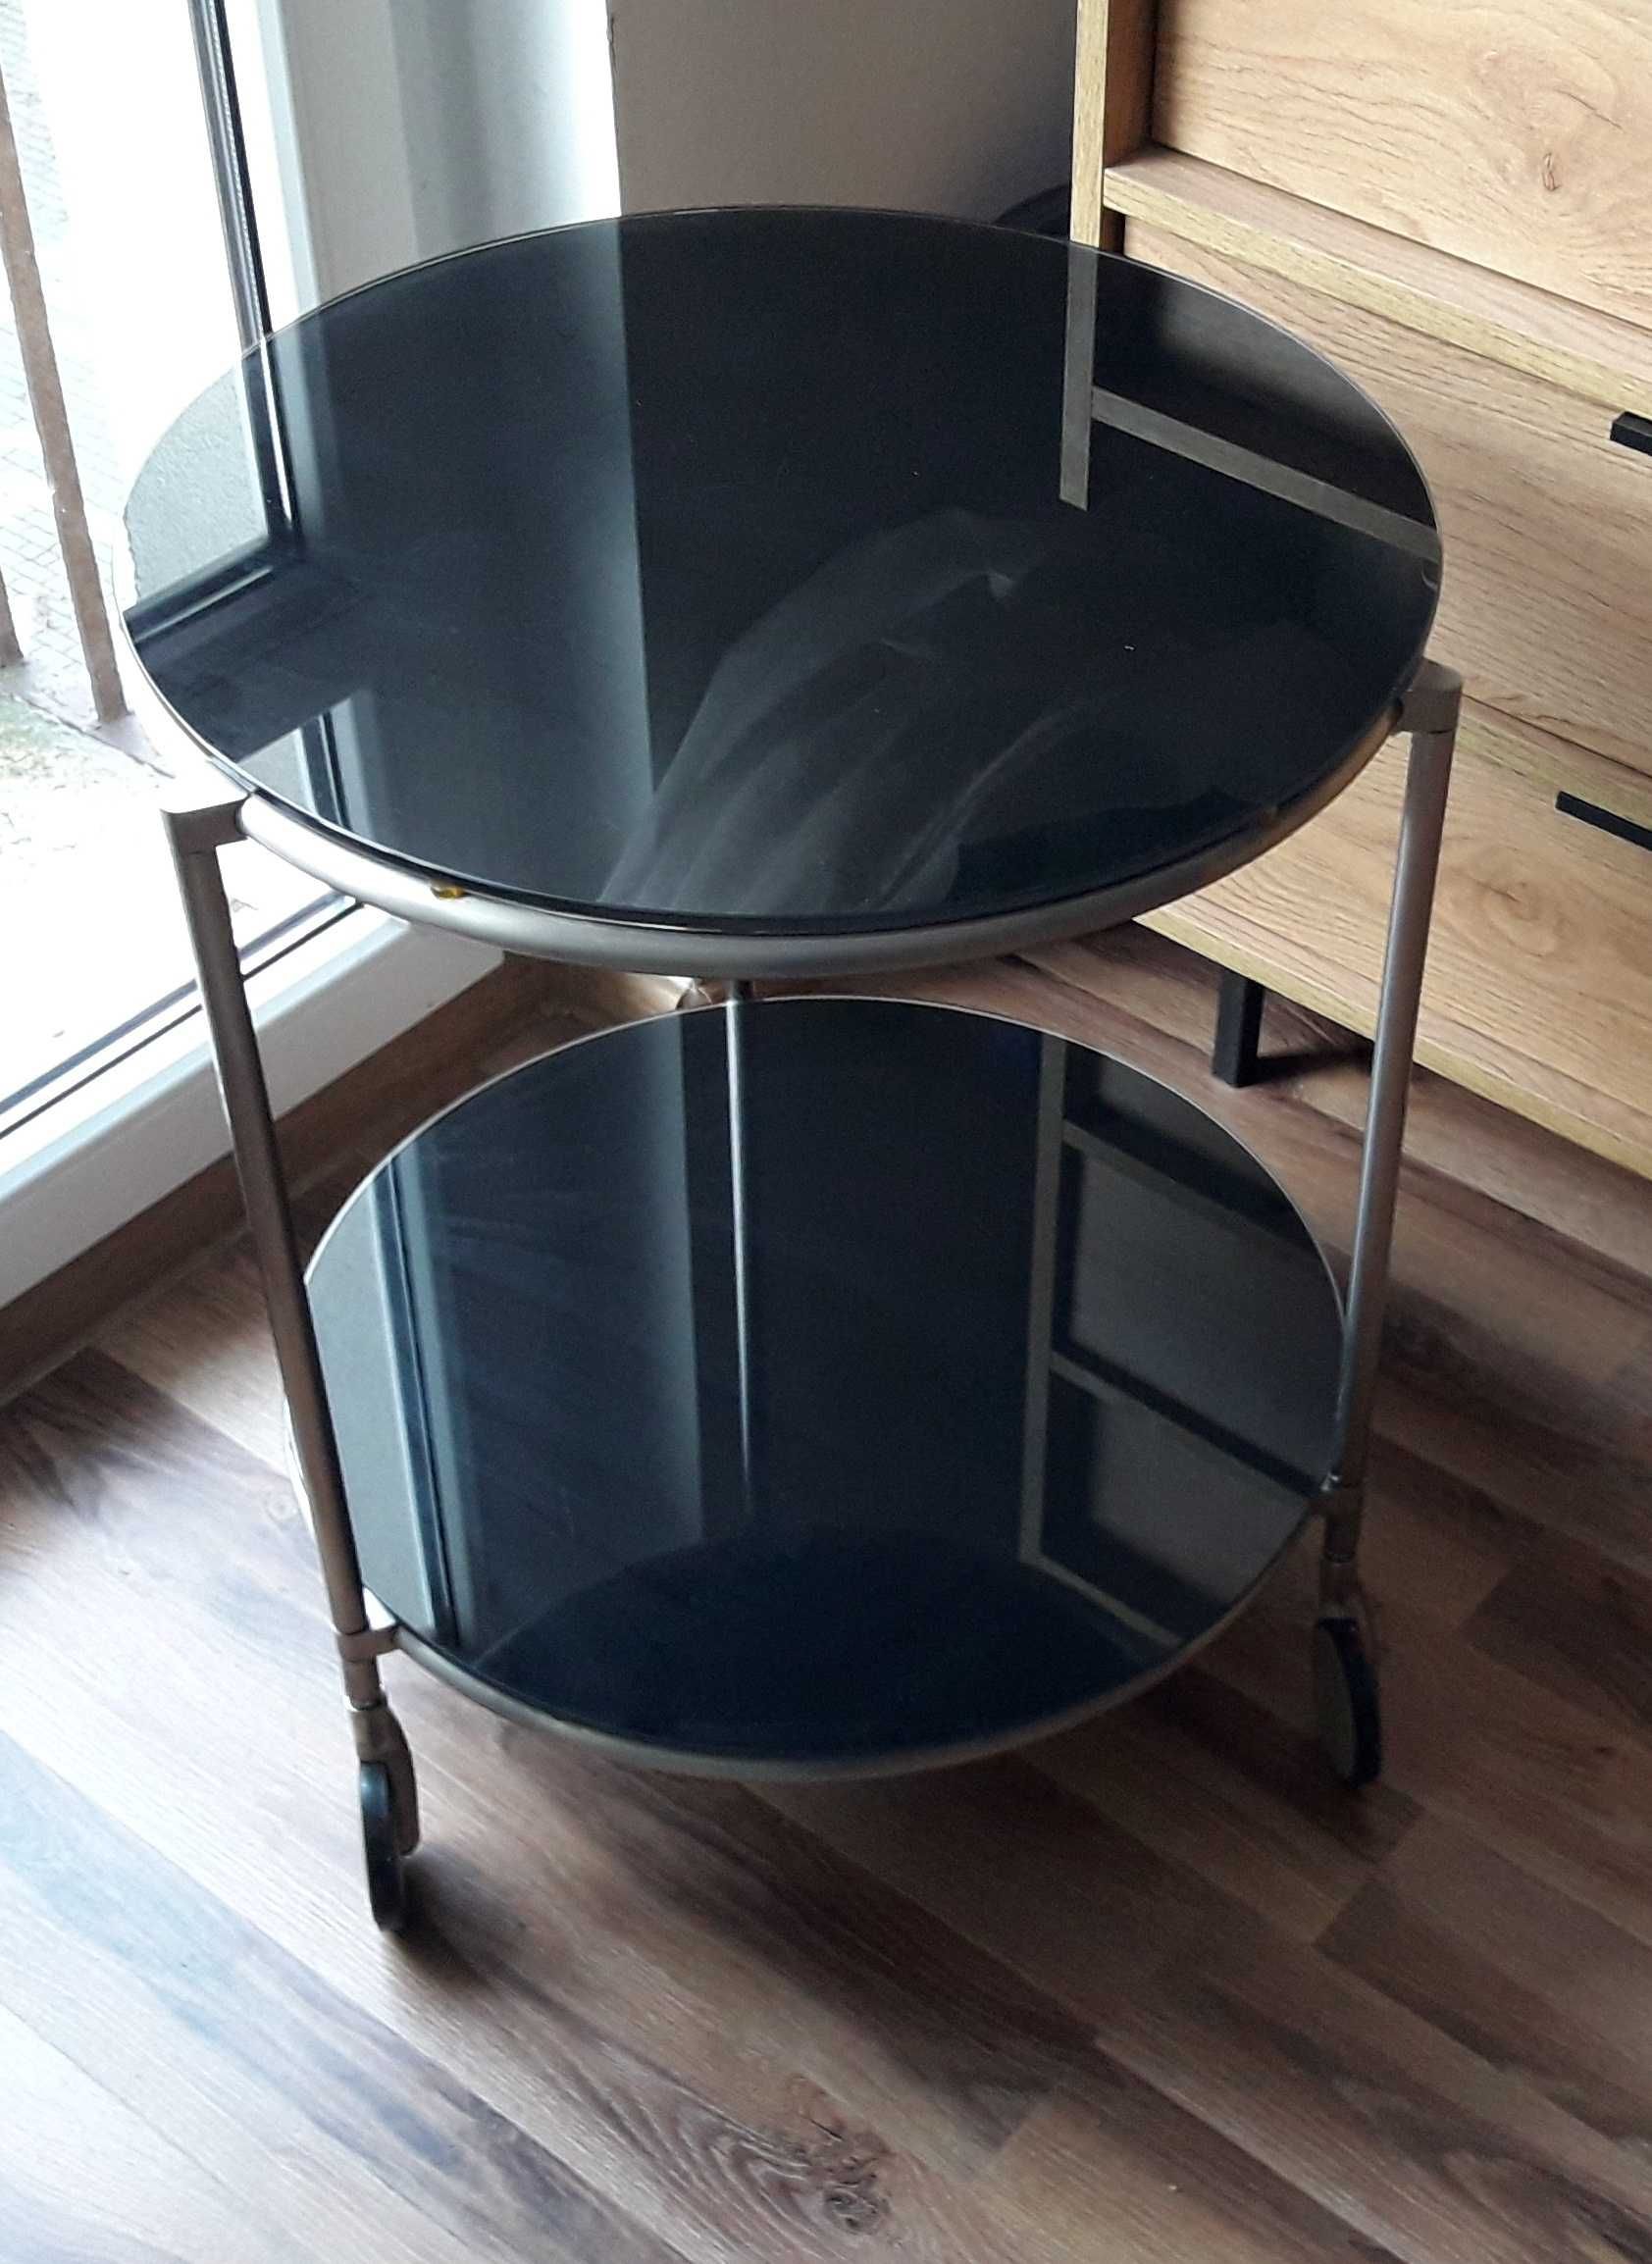 Stolik kawowy na kółkach Ikea Strind w stylu Bauhaus design